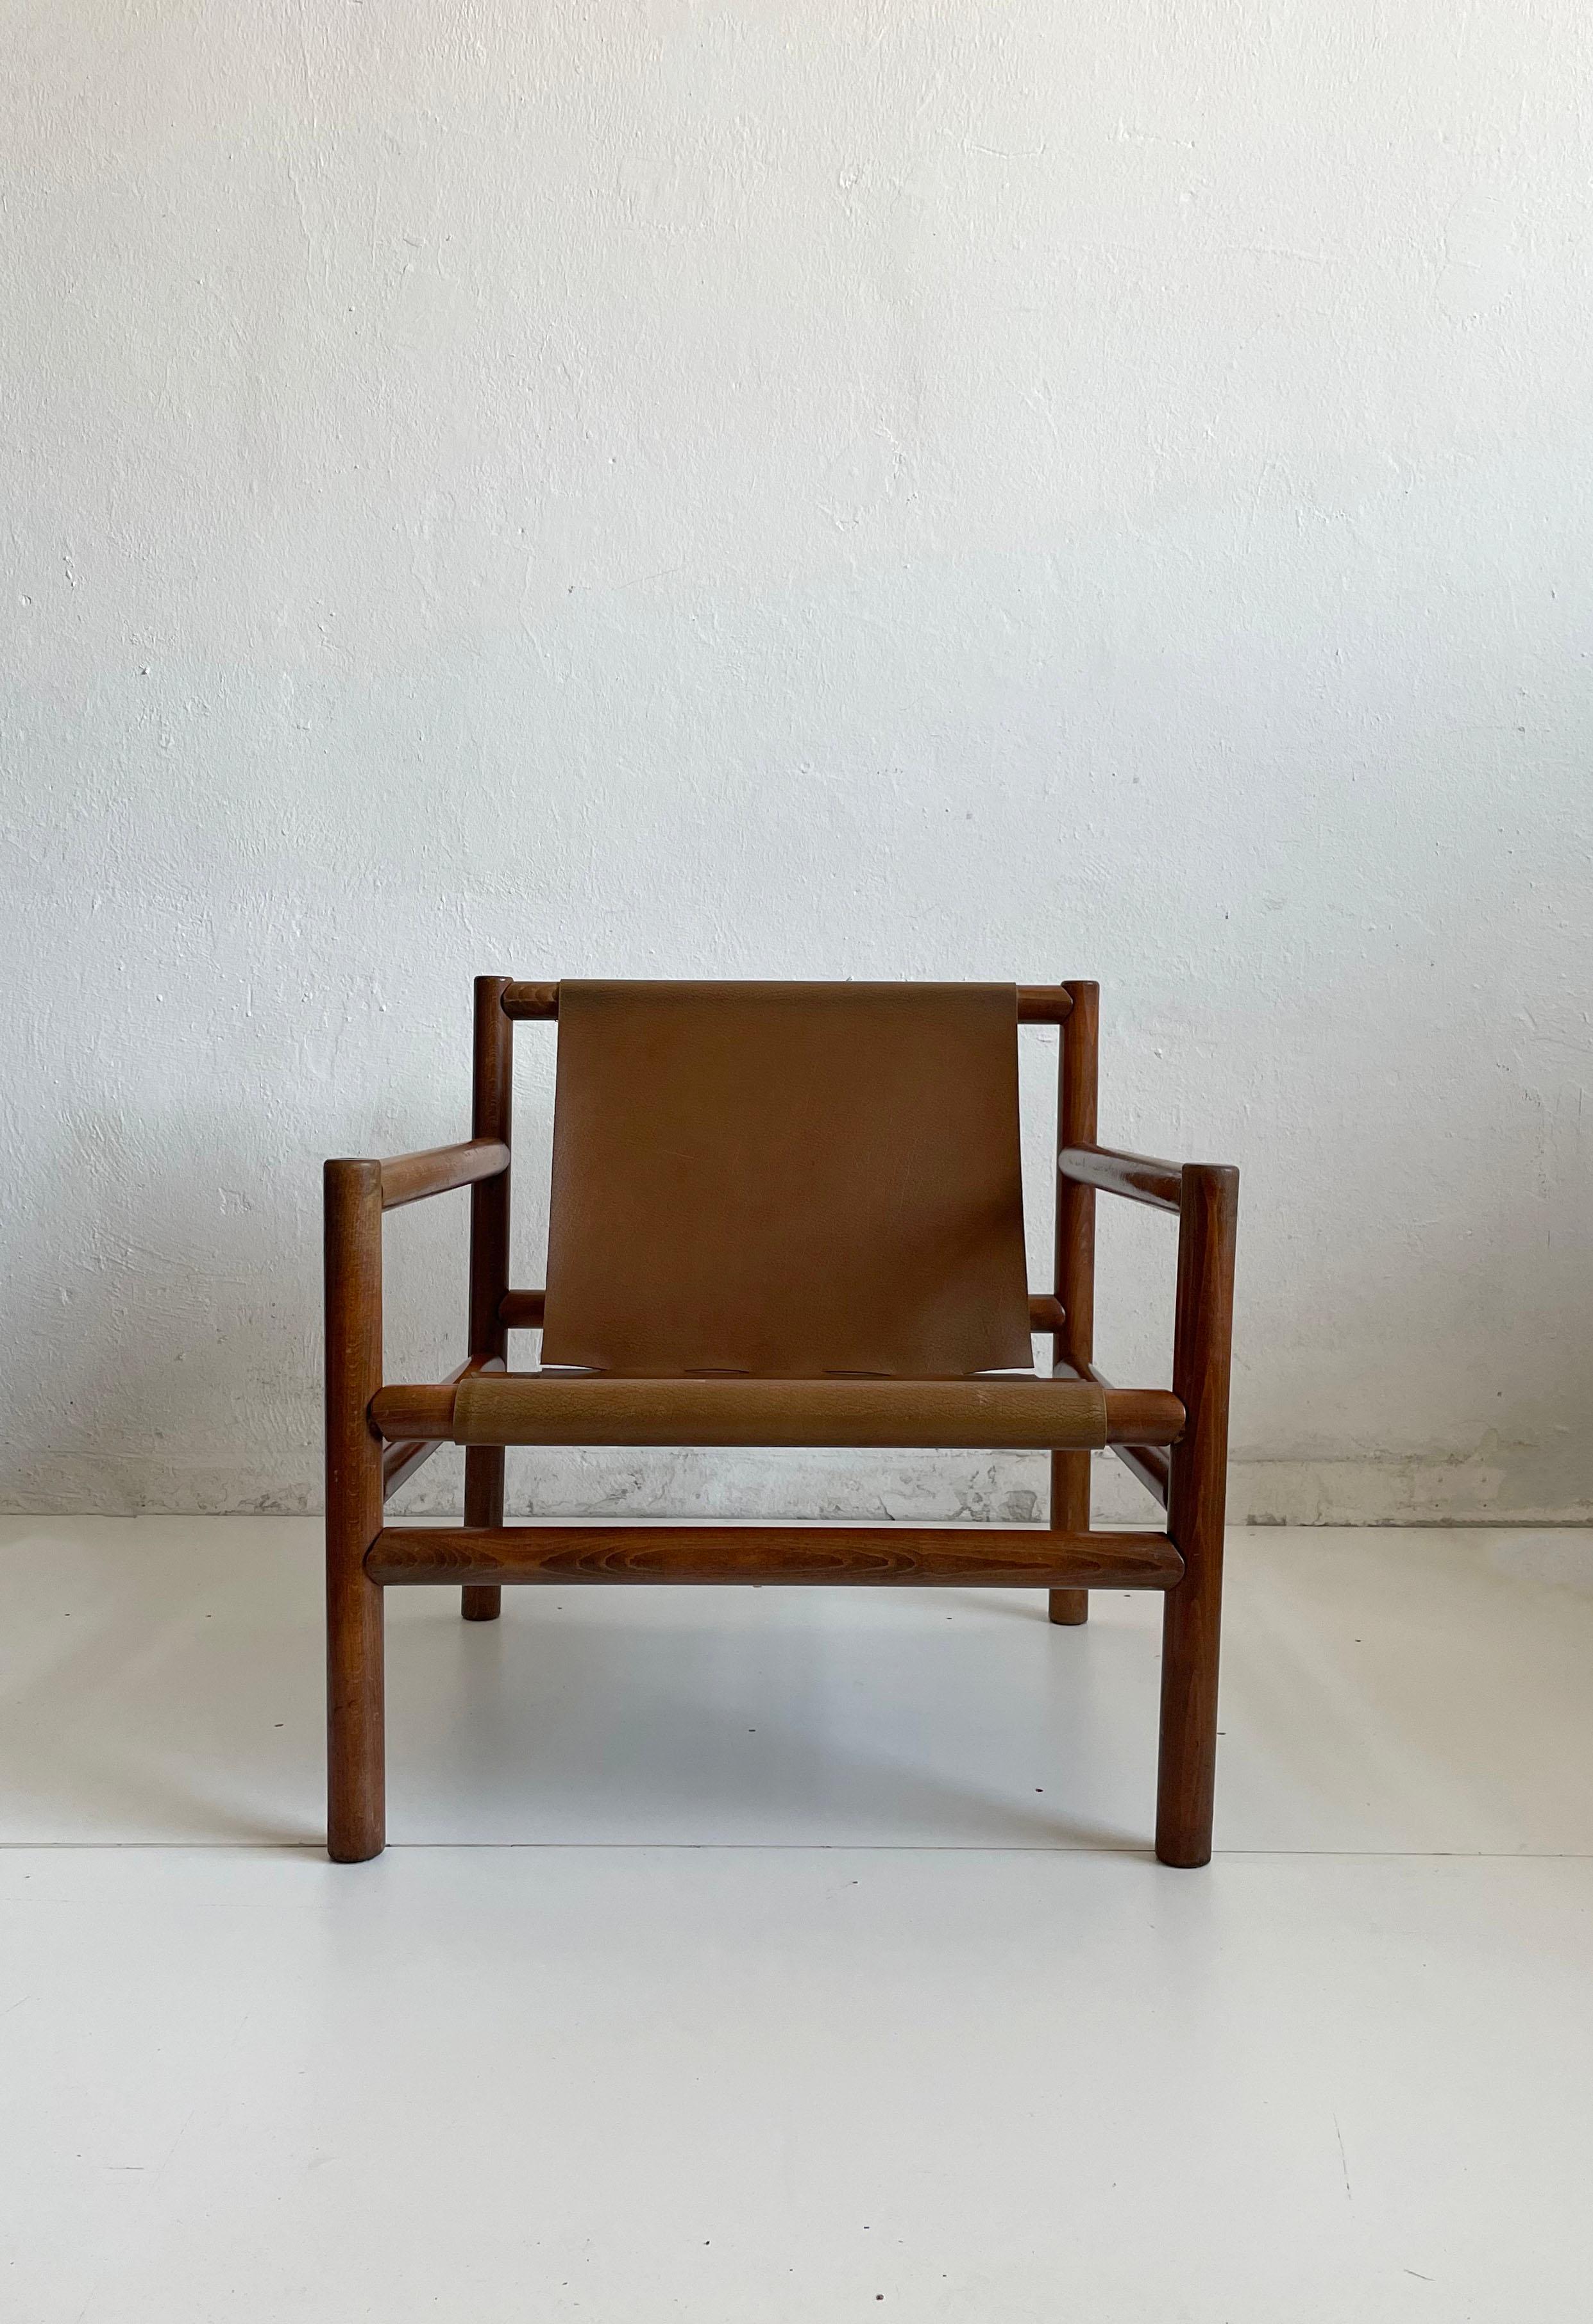 Fauteuil moderne du milieu du siècle conçu par Branko Ursic et fabriqué par Stol Kamnik, Slovénie Années 1970

La chaise est dotée d'un cadre en bois moderniste et d'une assise en similicuir brun caramel minimaliste.

La structure est saine et